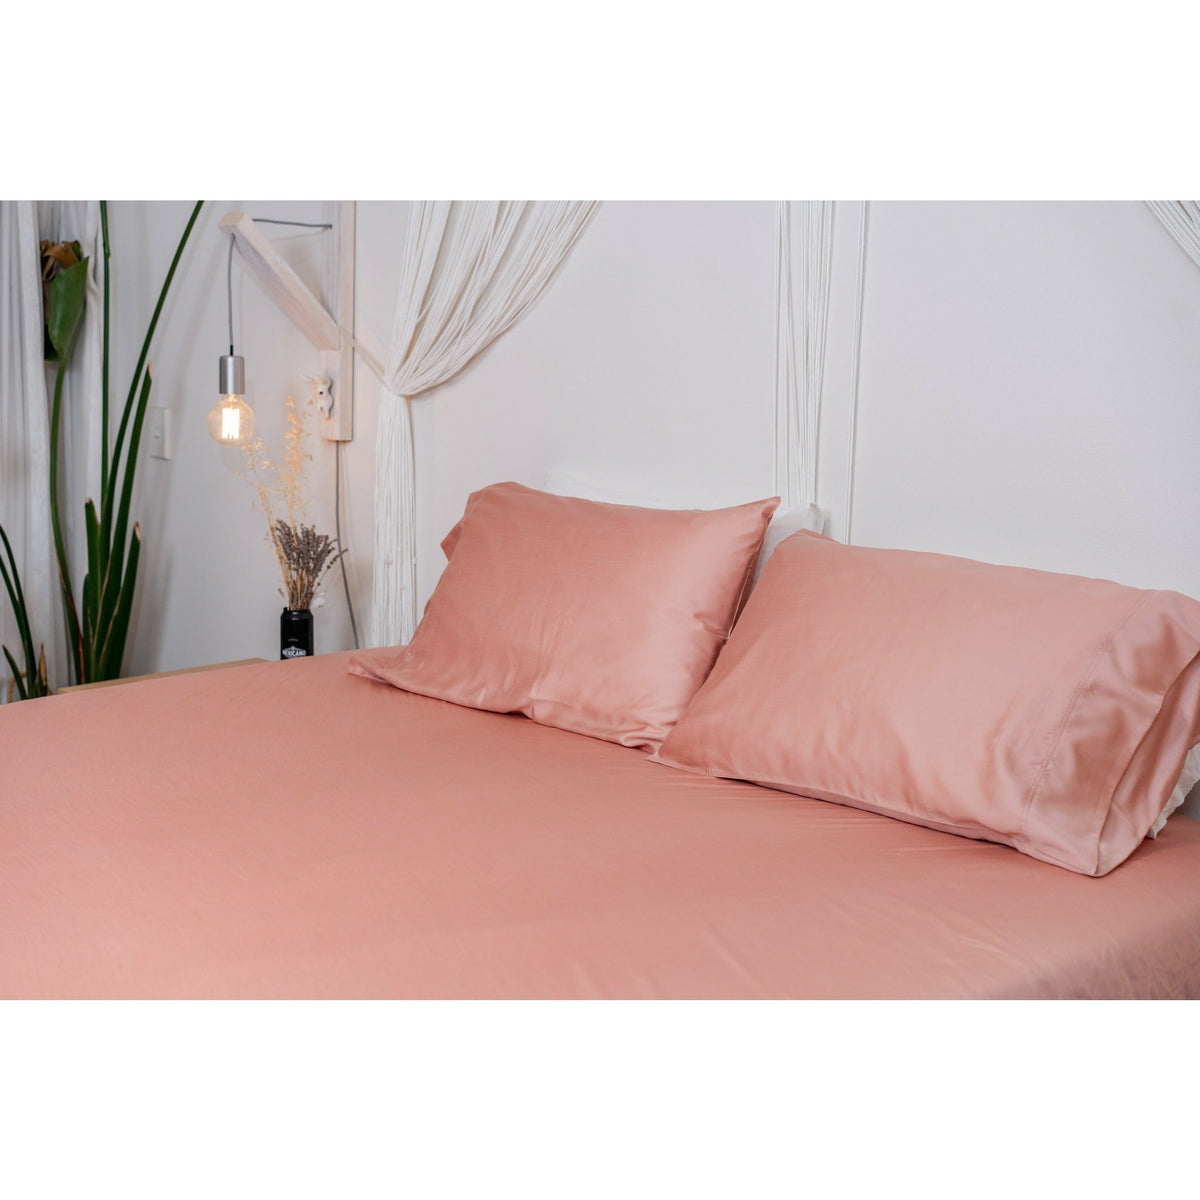 Blush Bed Sheets